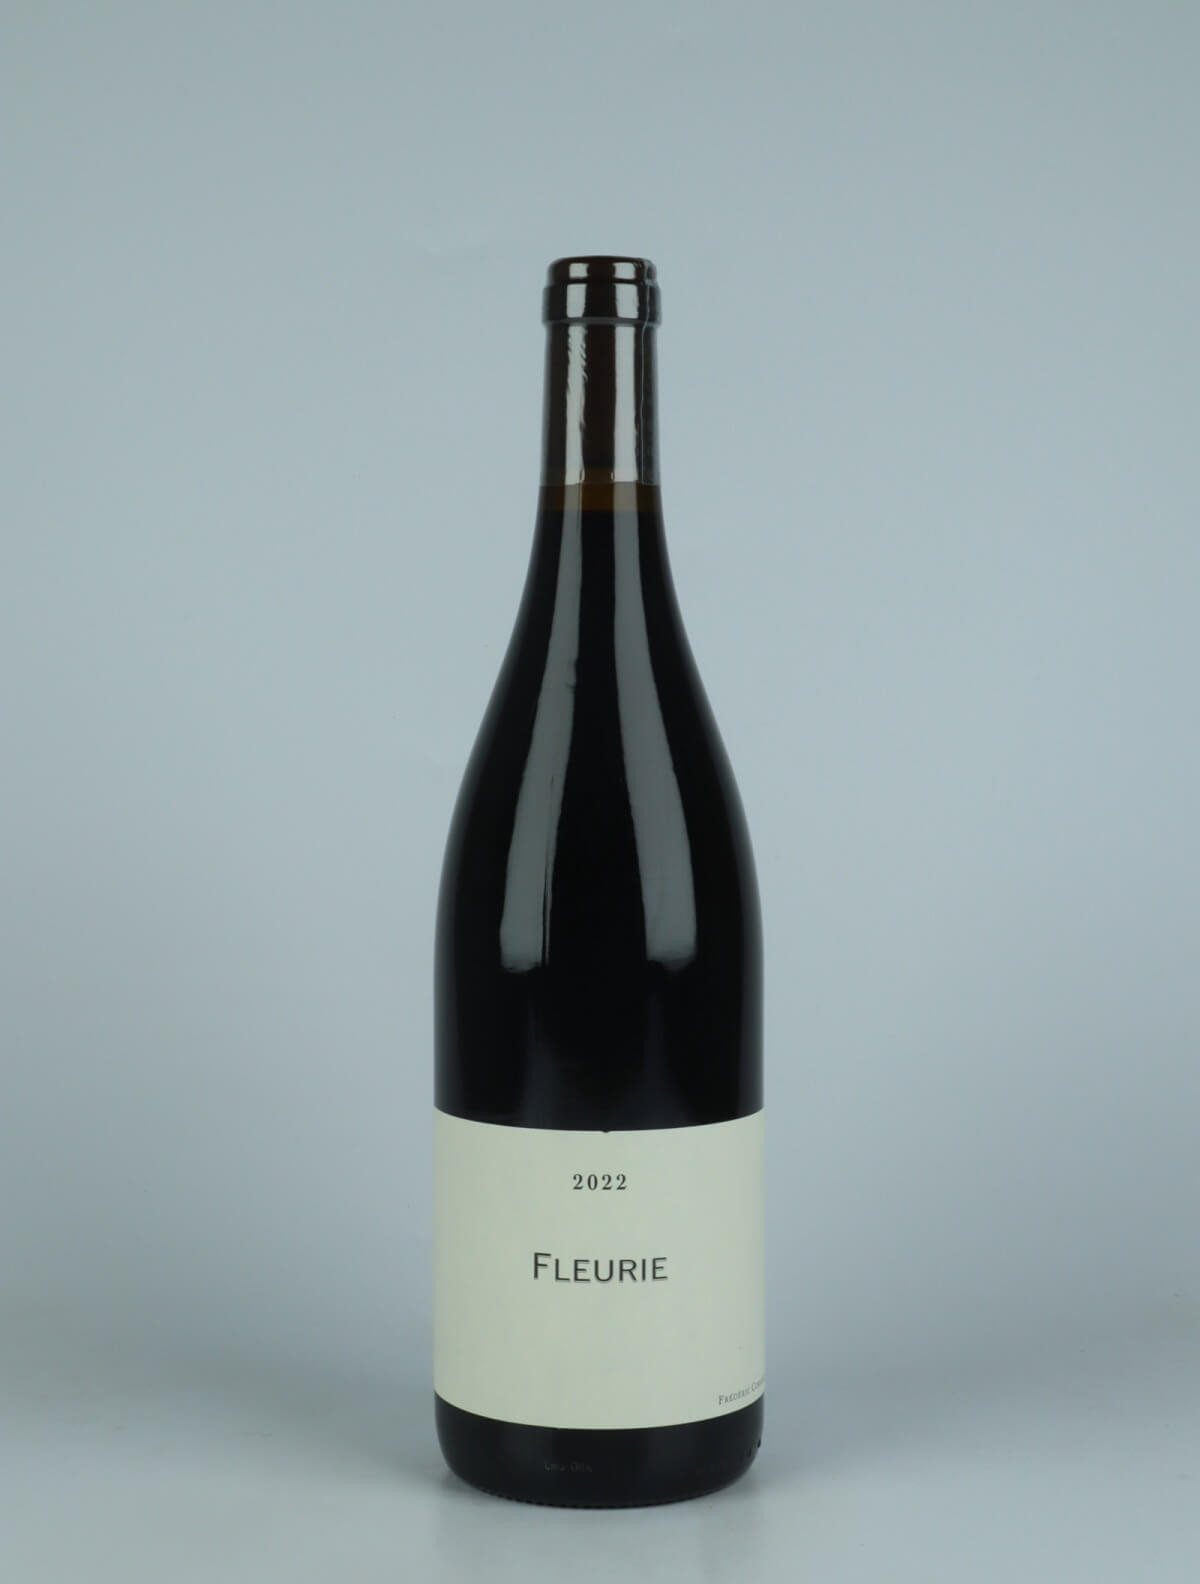 En flaske 2022 Fleurie Rødvin fra Frédéric Cossard, Beaujolais i Frankrig